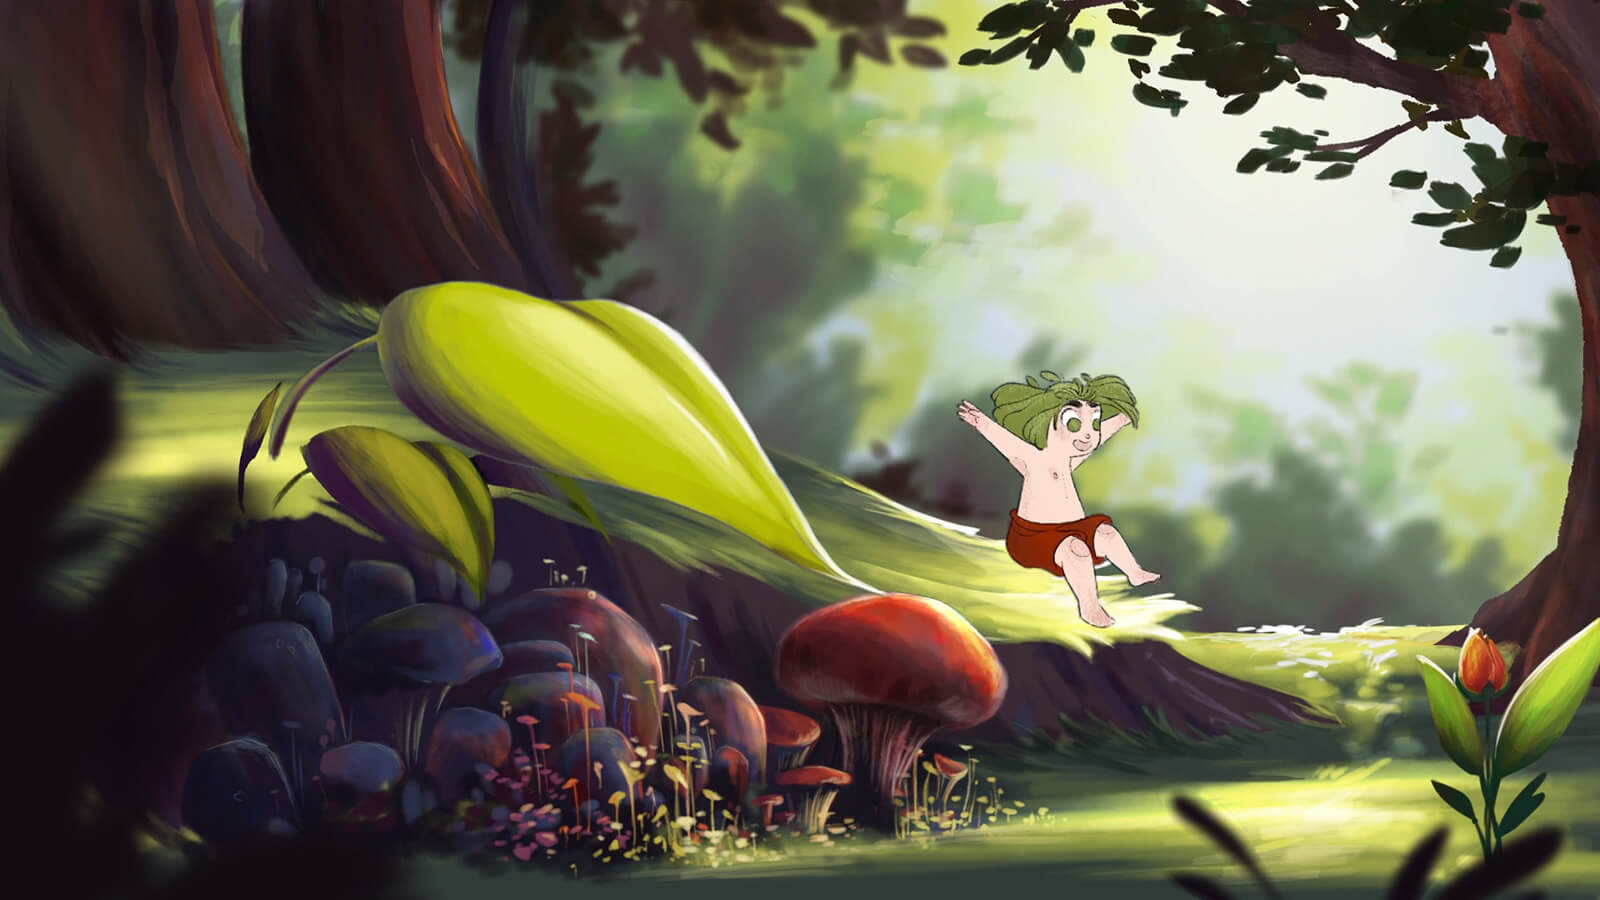 Una joven se desliza por una hoja gigante y está a punto de aterrizar cerca de un grupo de hongos dentro de un bosque.